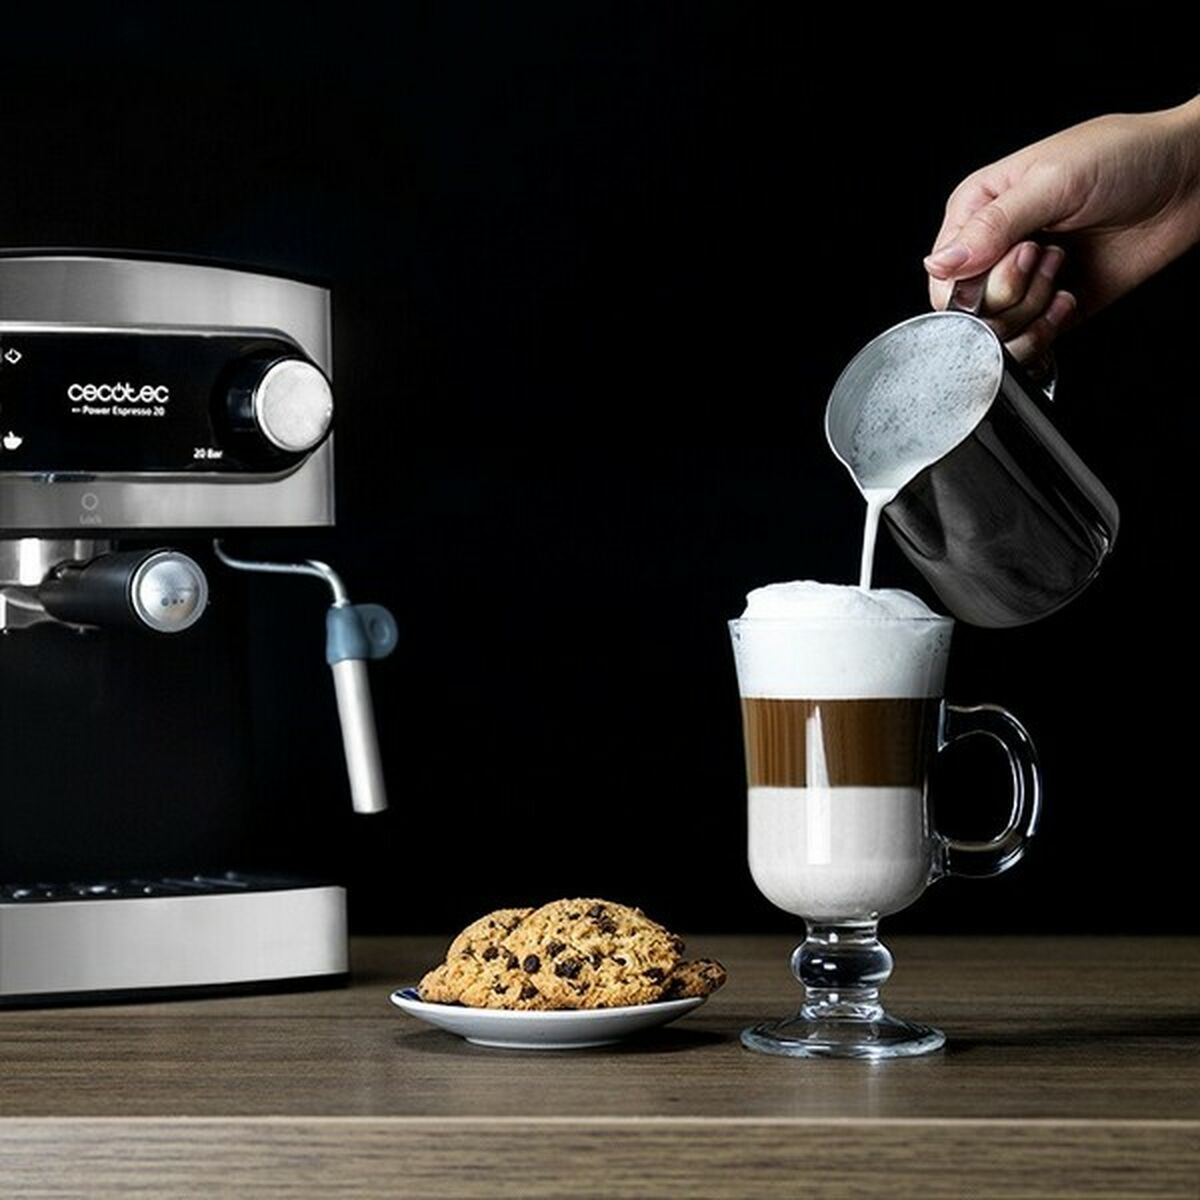 Machine de café manuelle express Cecotec 01501 1,5 L 850W 1,5 L